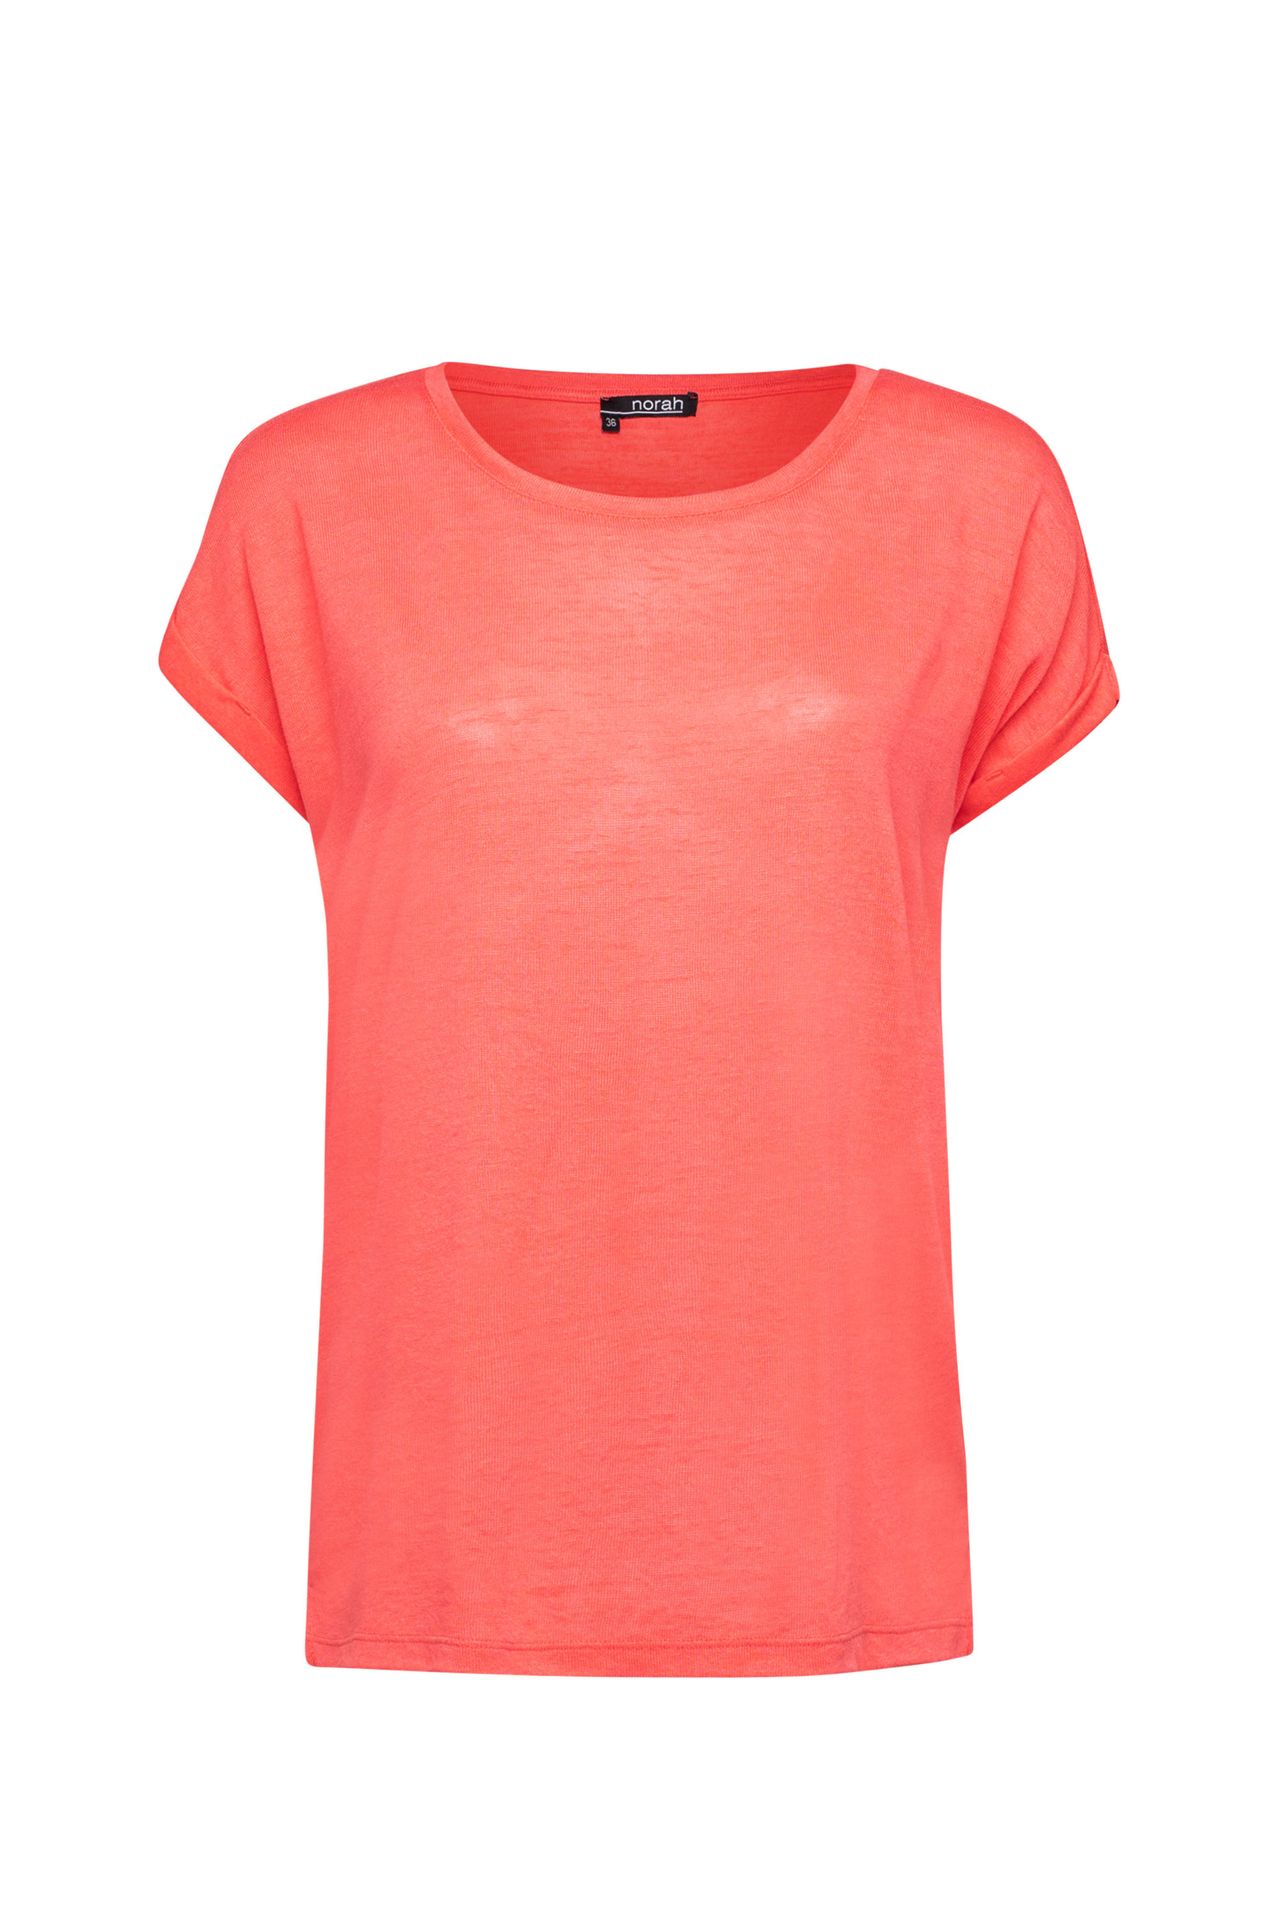 Norah Shirt roze coral 211185-706